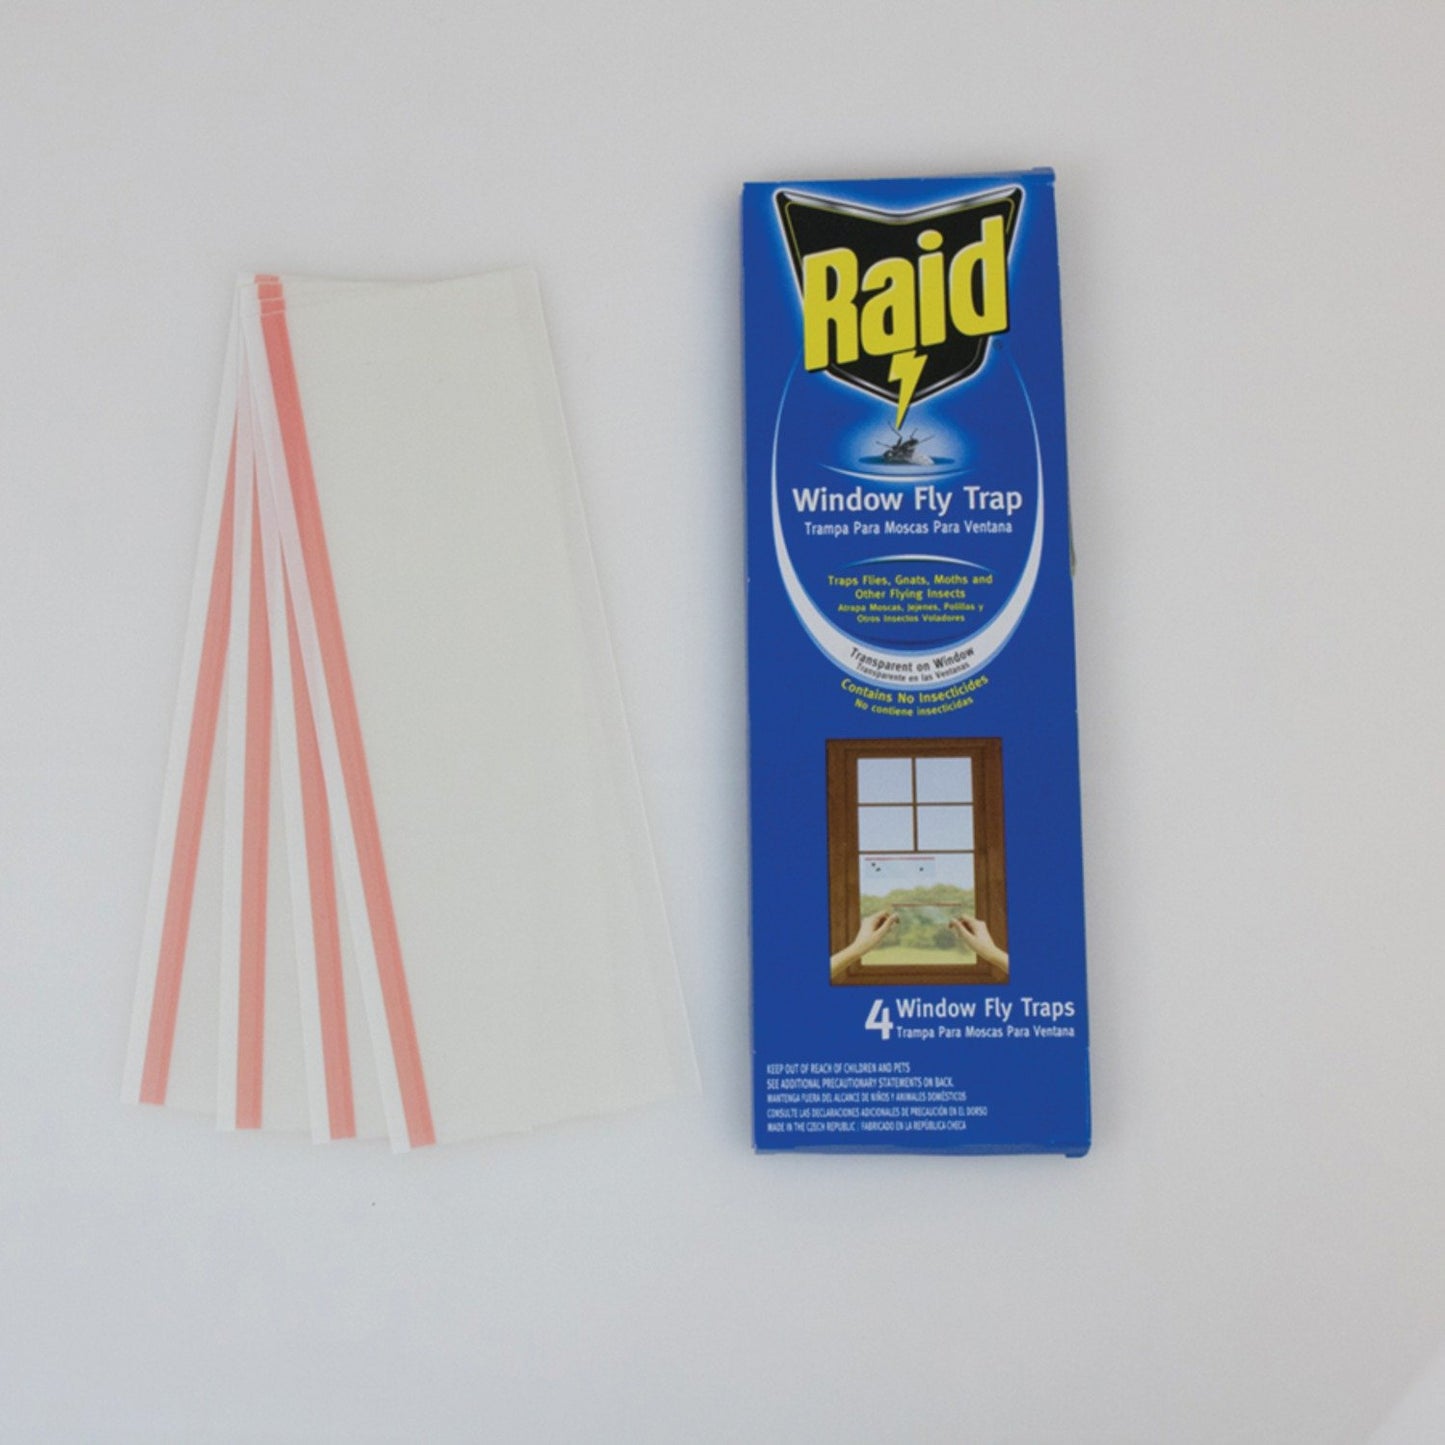 Raid FTRPRAID Window Fly Traps